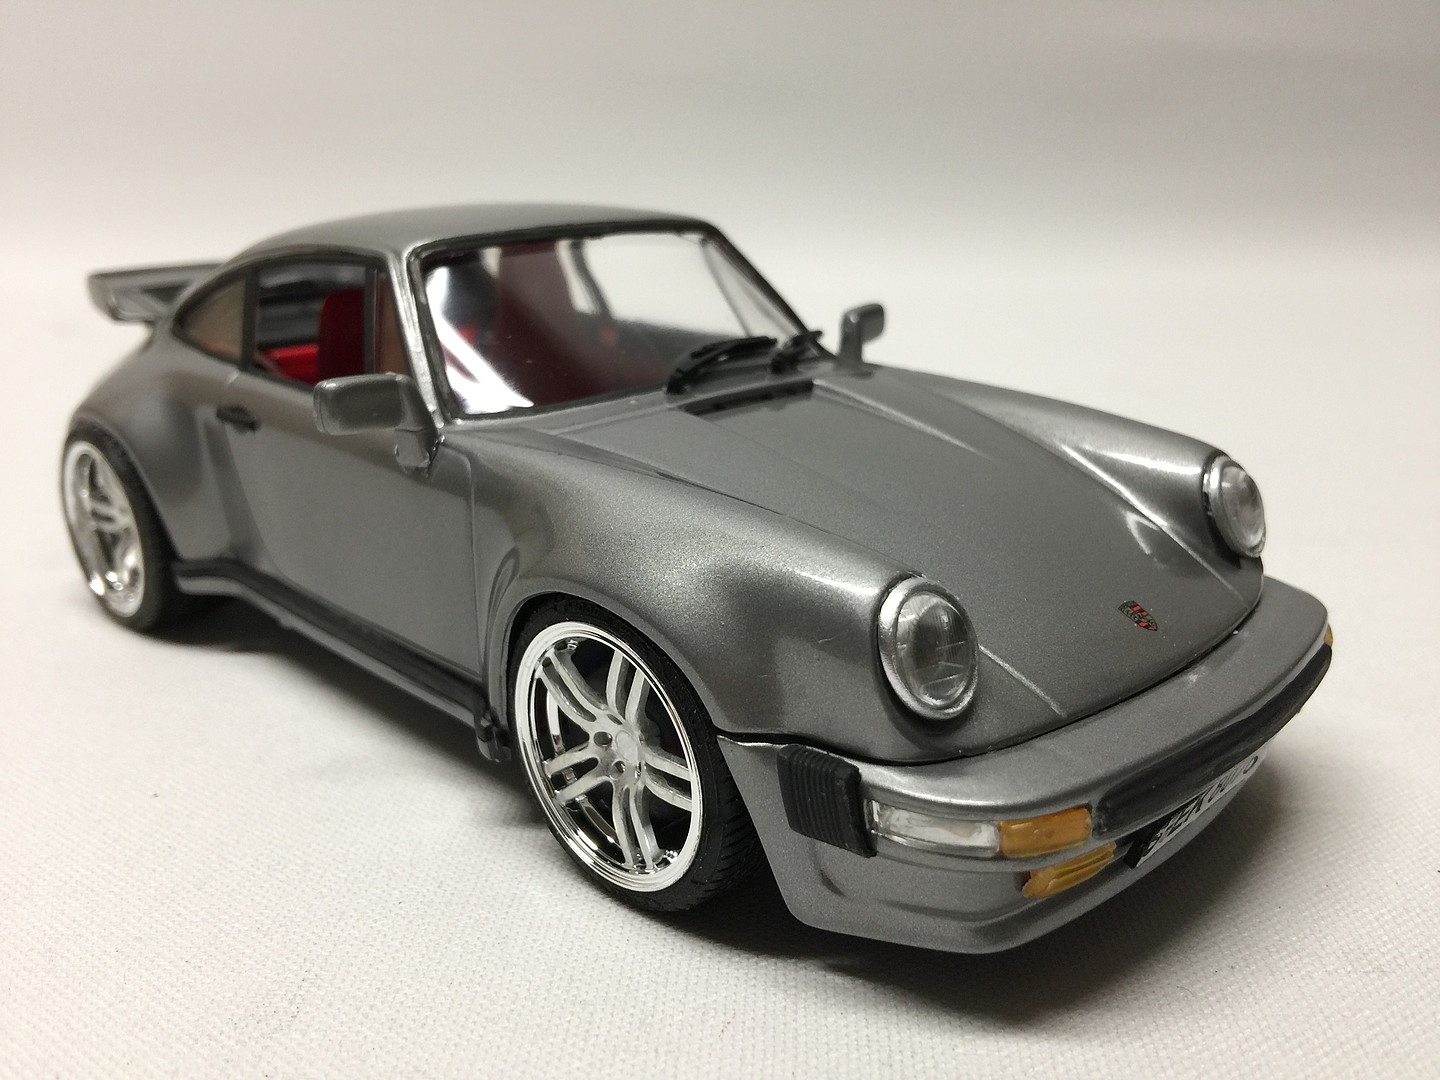 Maquette voiture - Porsche 911 Turbo - 24279 - Kits maquettes tout inclus -  Maquettes